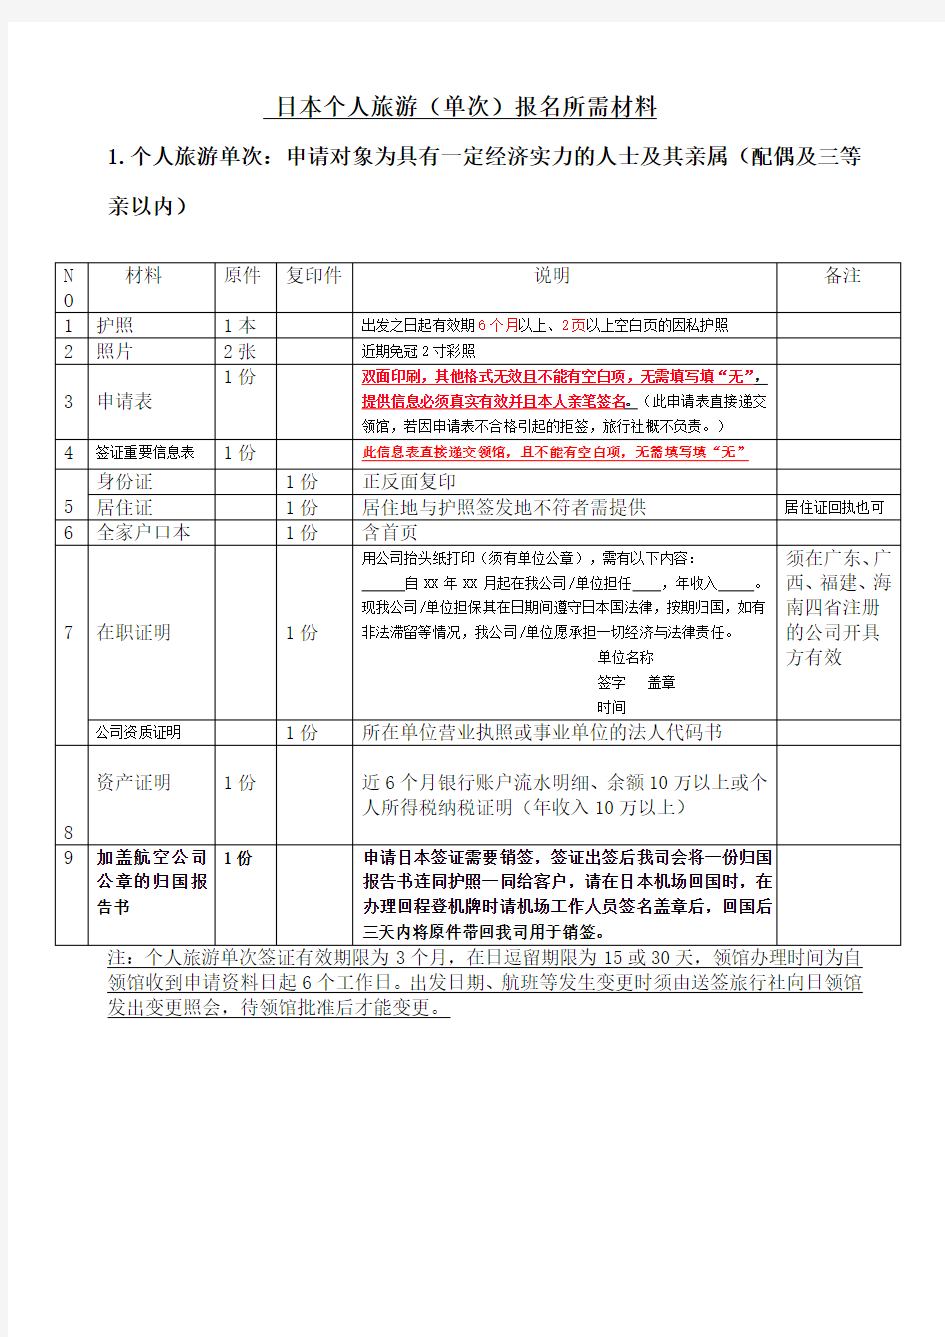 新版日本个人单次旅游签证须知及申请表格(20150309更新)